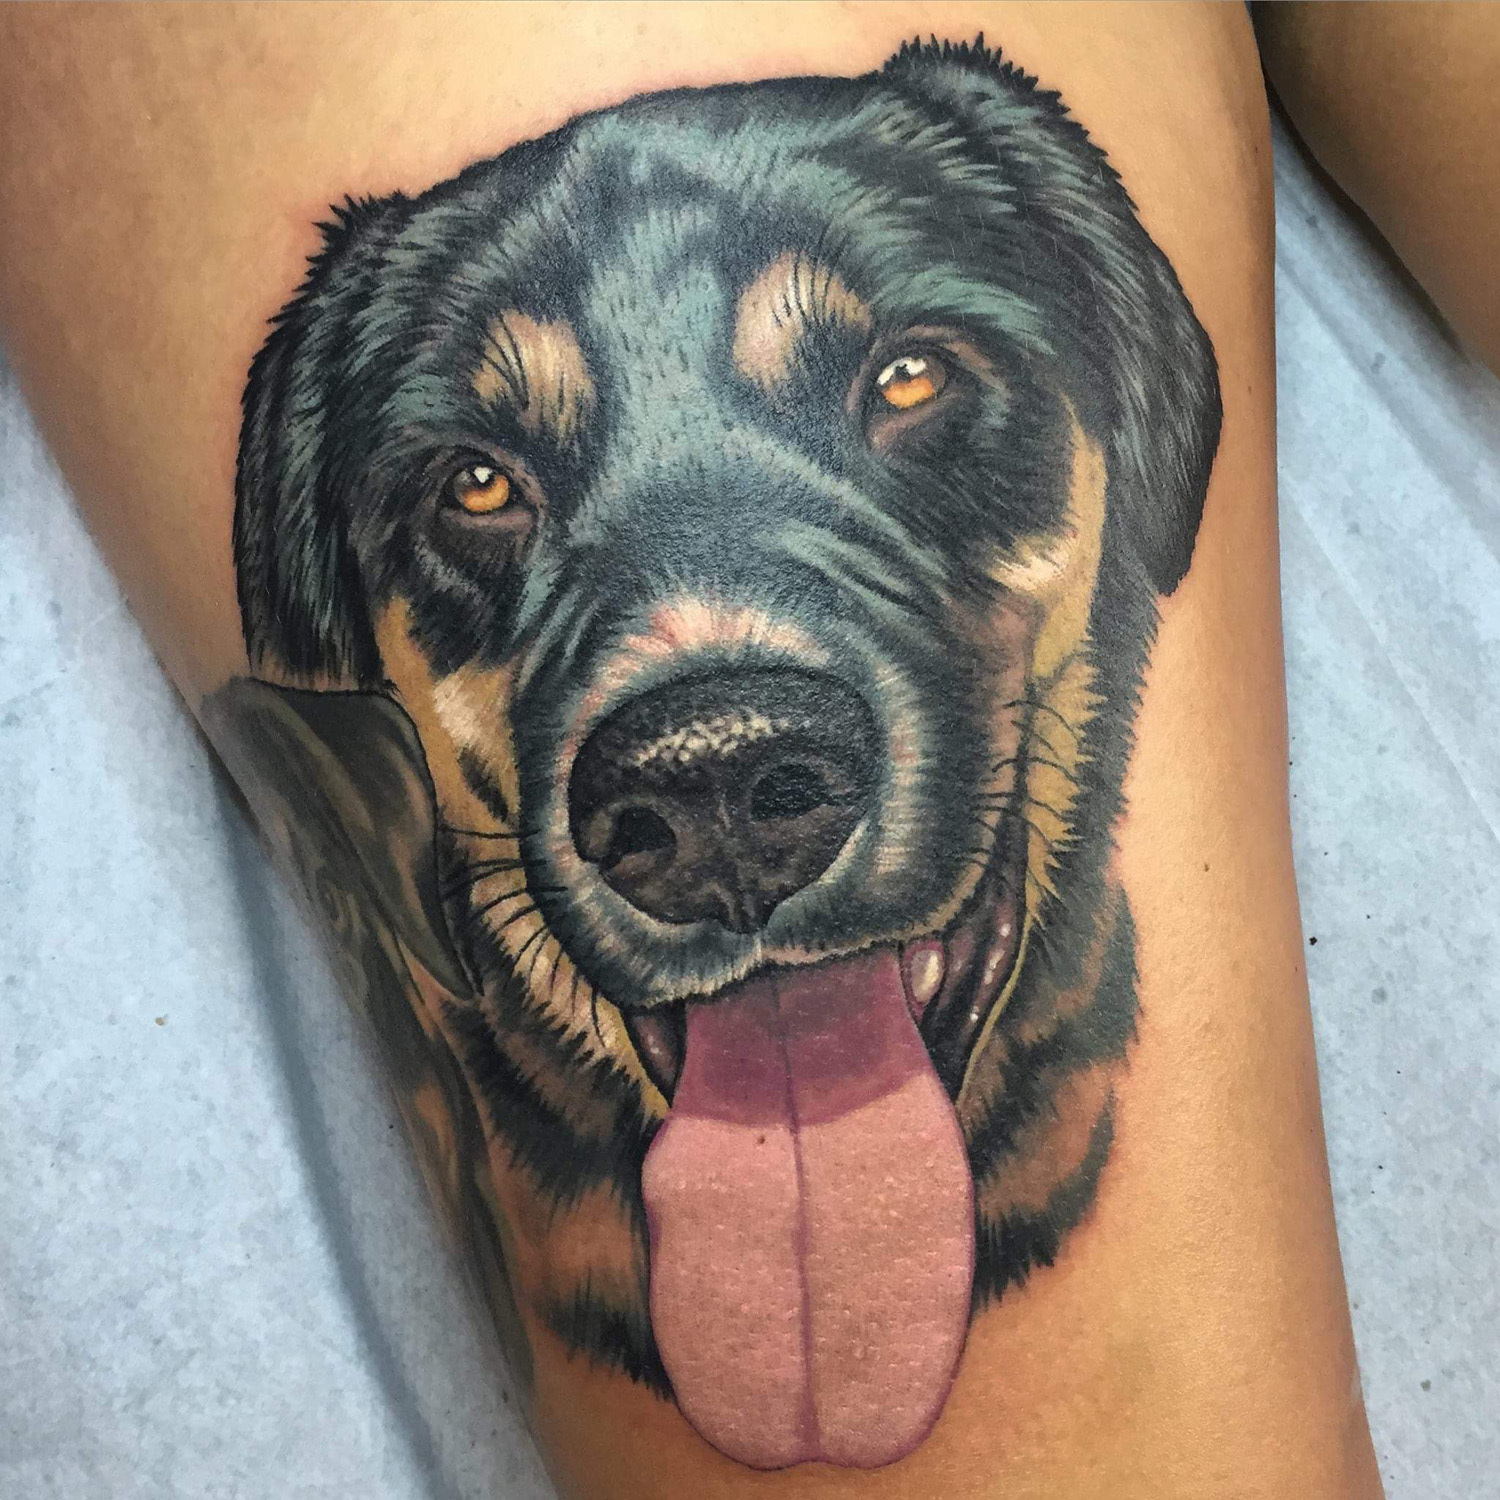 10 Best Tattoo Parlors in Georgia